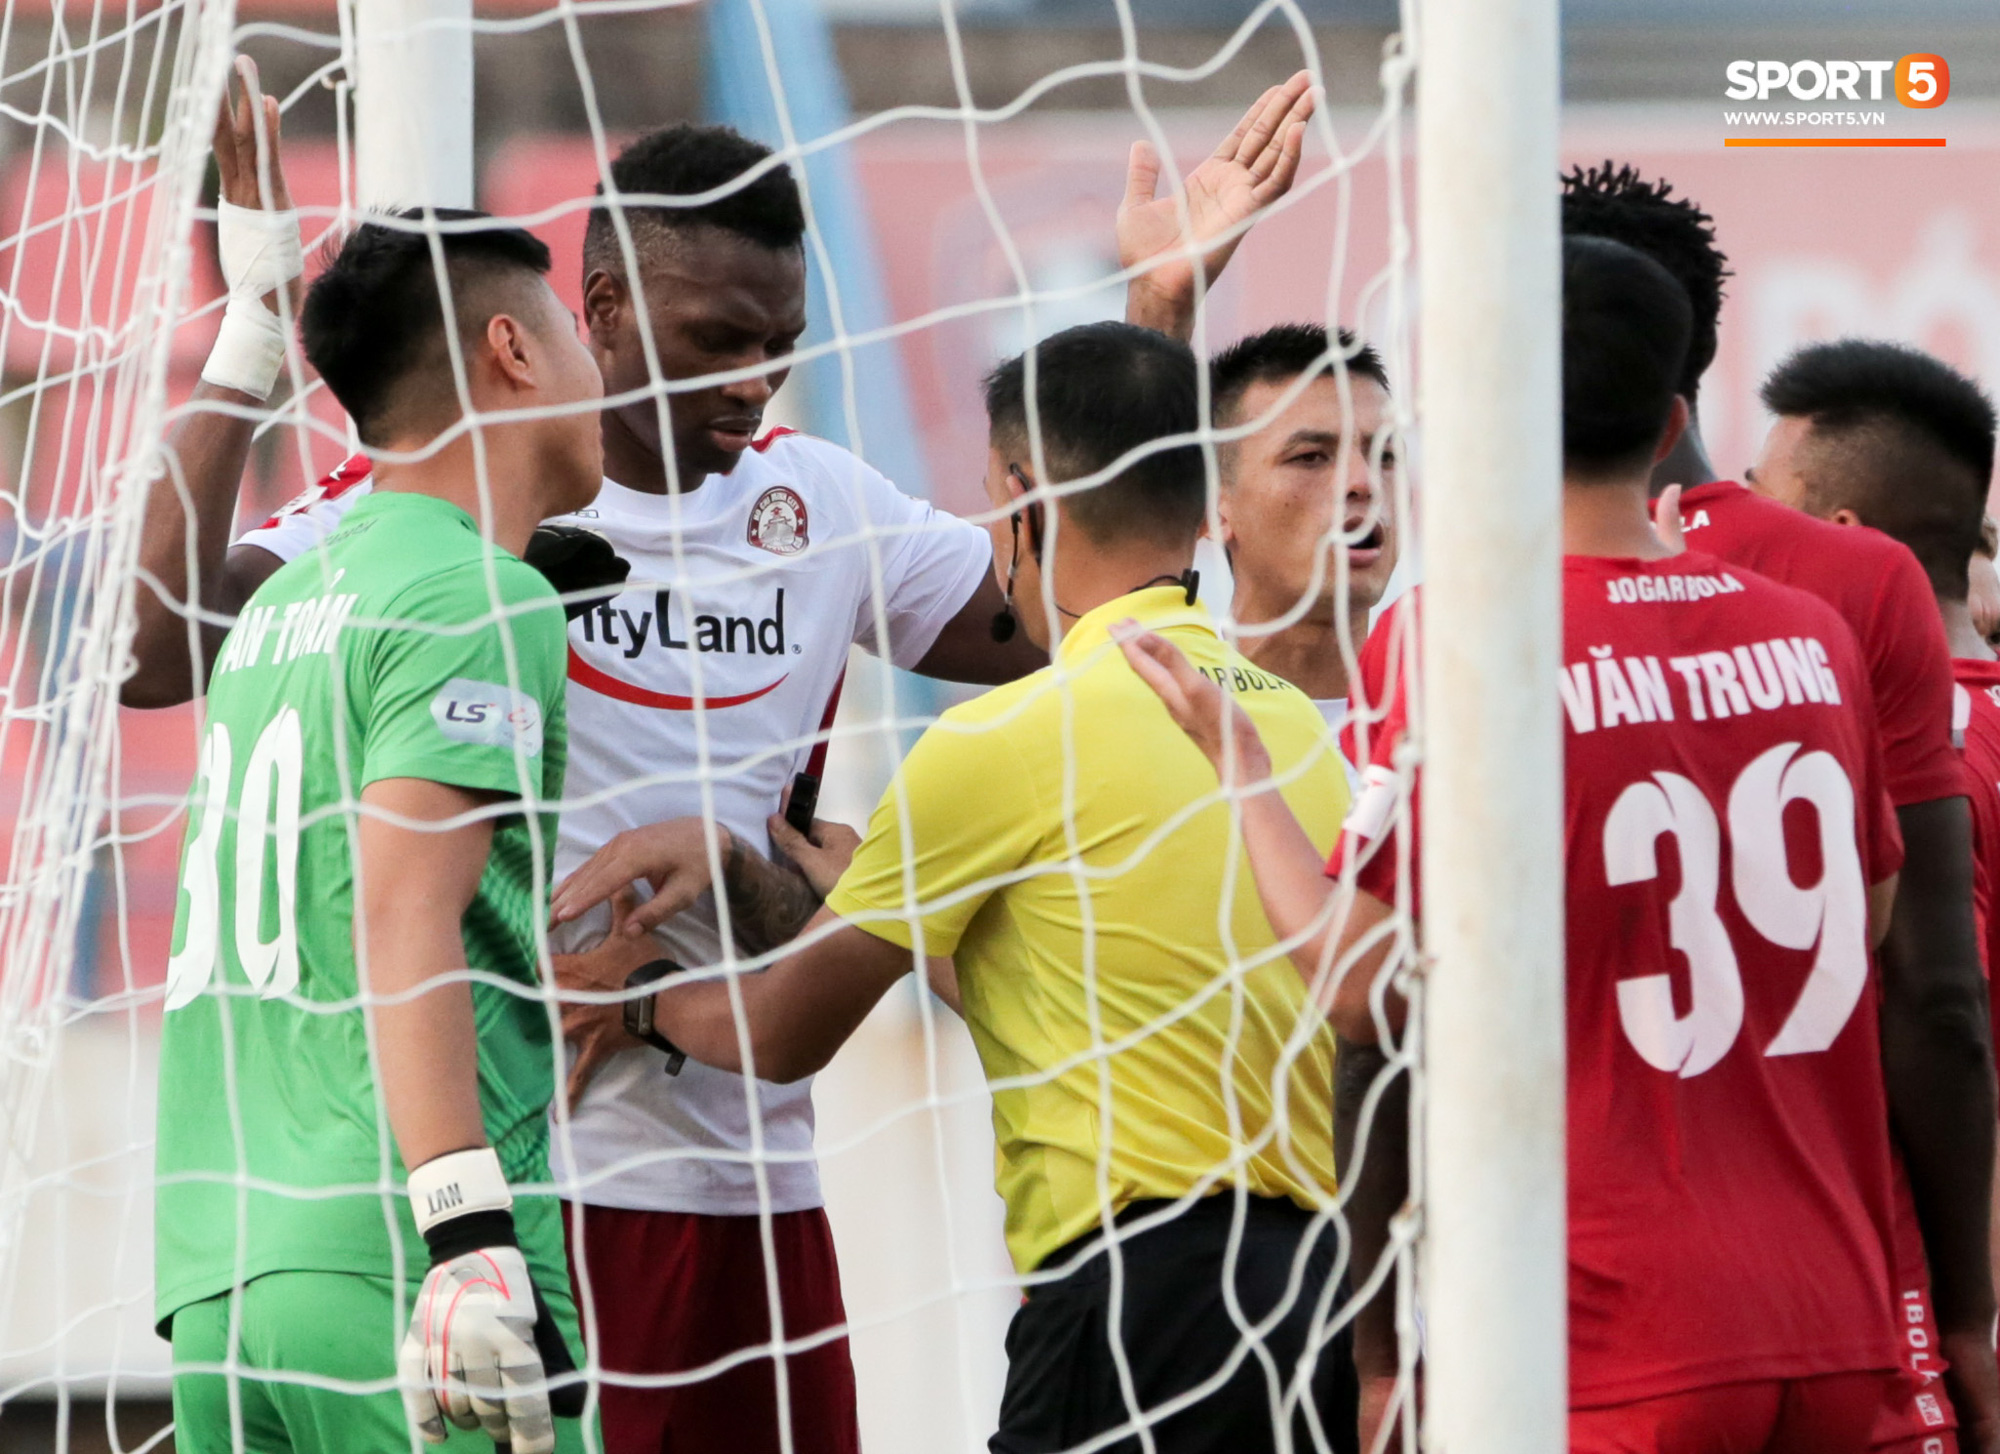 Cựu tuyển thủ Việt Nam xui học trò gây áp lực với trọng tài để đối thủ nhận thẻ phạt - Ảnh 4.